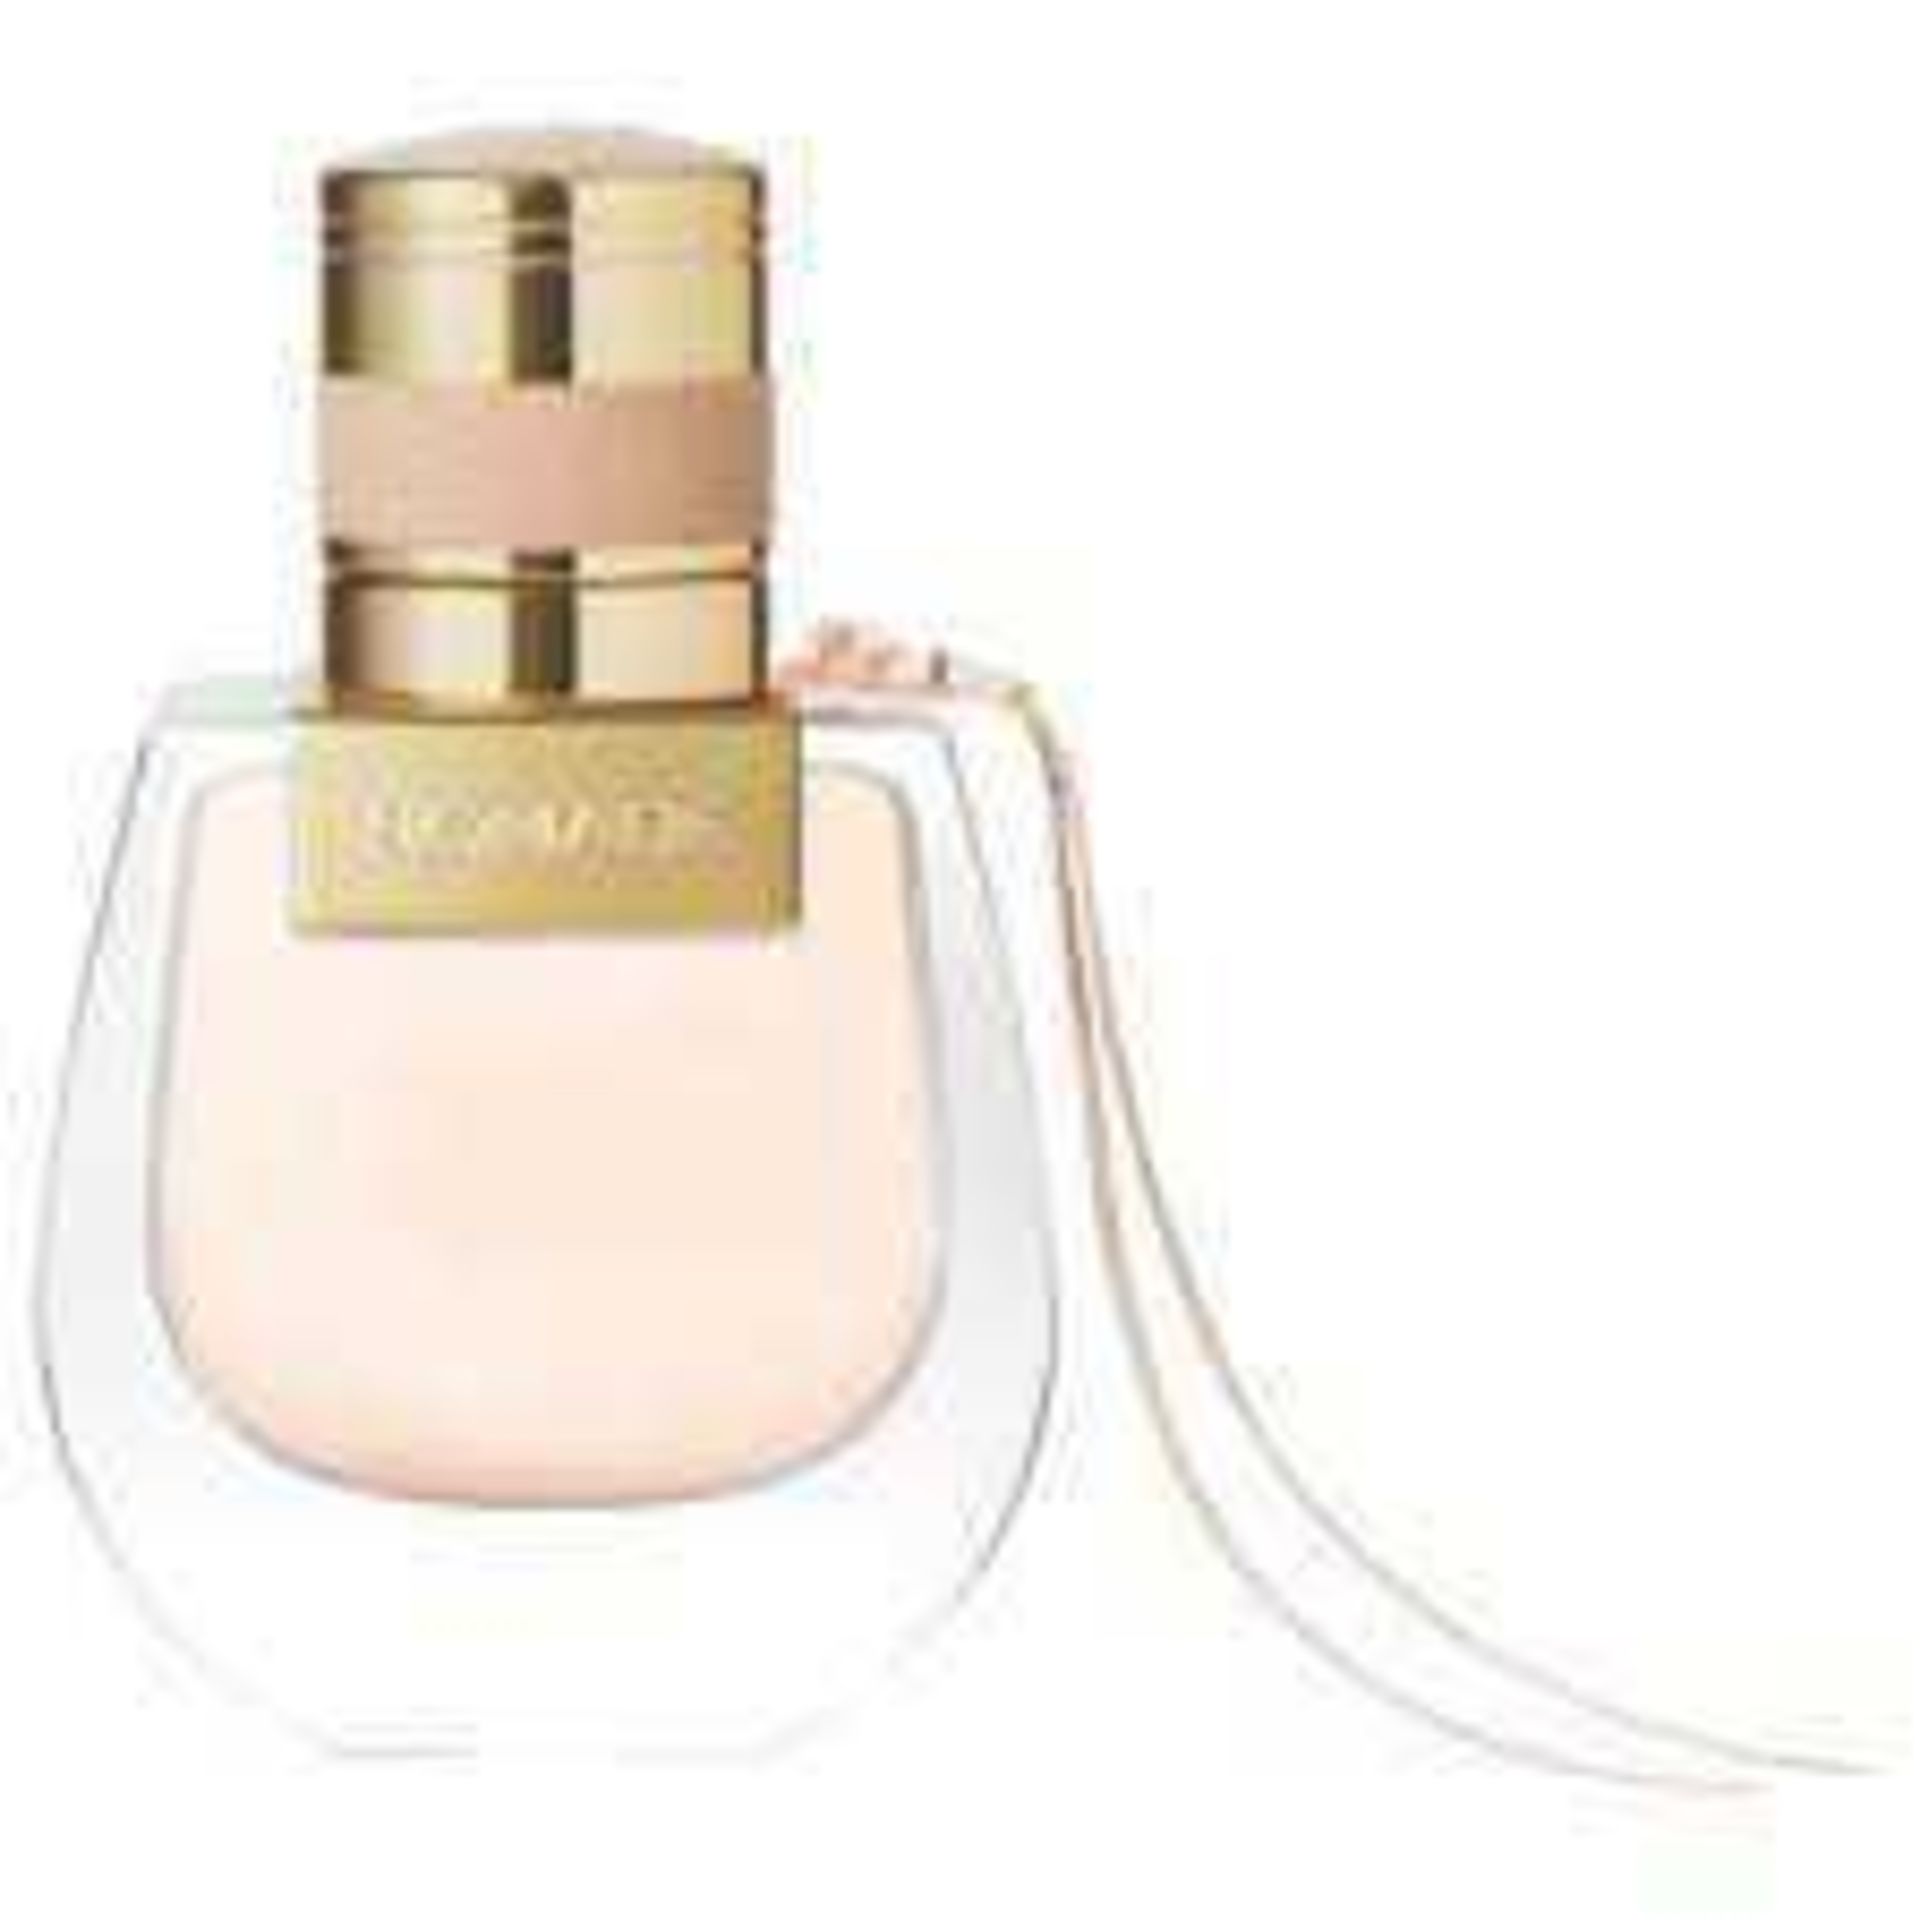 RRP £75 Brand New Boxed Full 75Ml Tester Bottle Of Chloe Nomade Perfume Spray